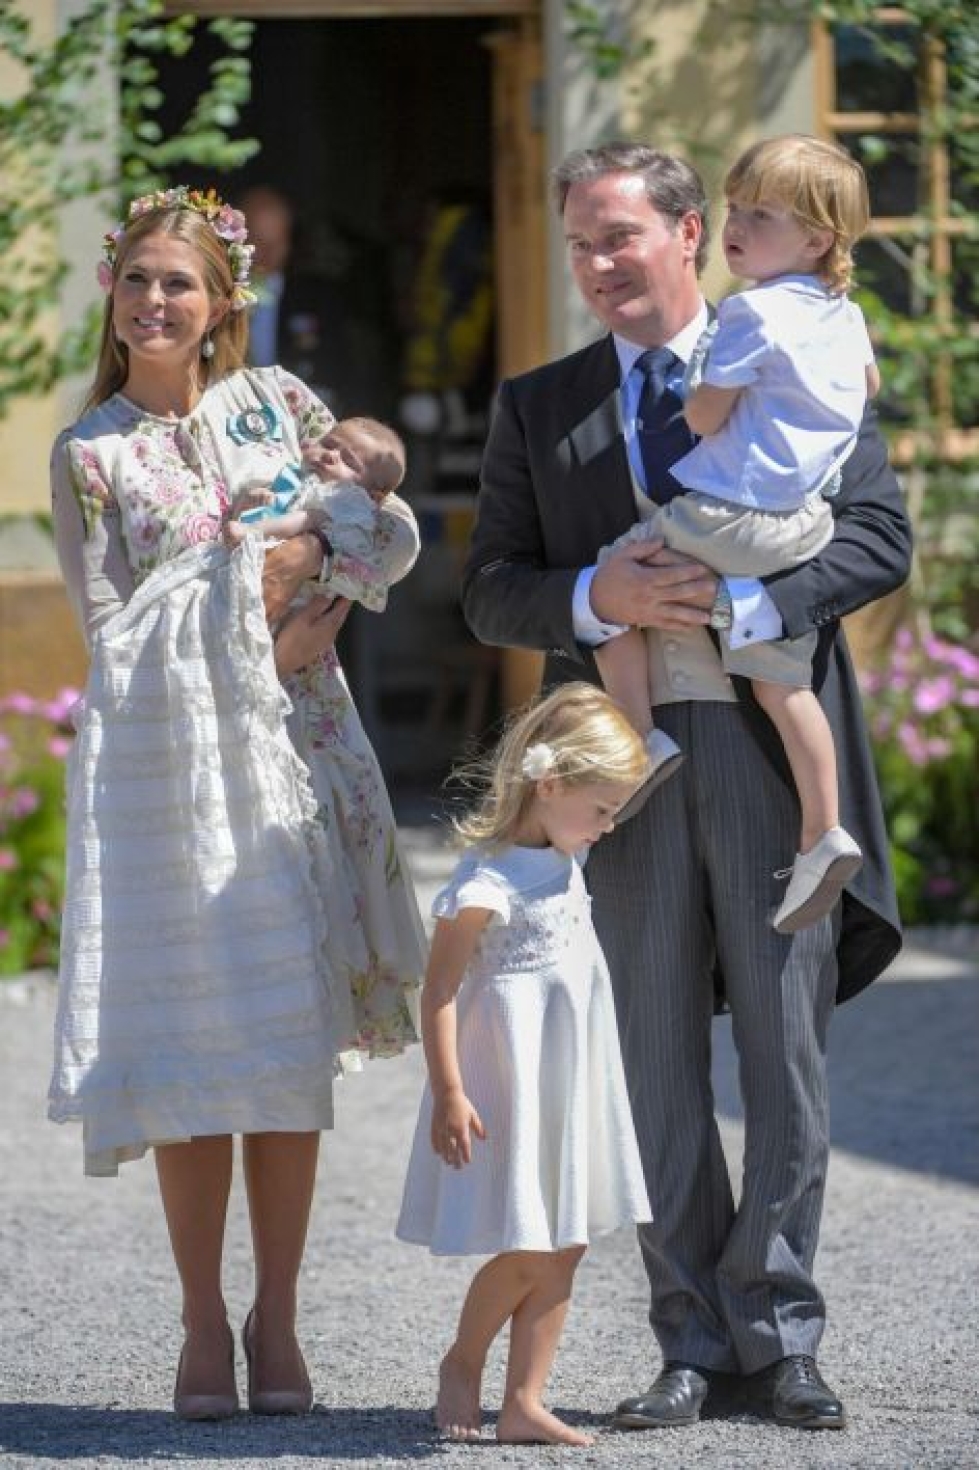 Päätös supistaa Ruotsin kuningashuoneen kokoa. Prinsessa Madeleinen ja prinssi Carl Philipin lapset ovat jatkossakin kuninkaallisen perheen jäseniä ja pitävät heille myönnetyt herttuan ja herttuattaren arvonsa. LEHTIKUVA/AFP